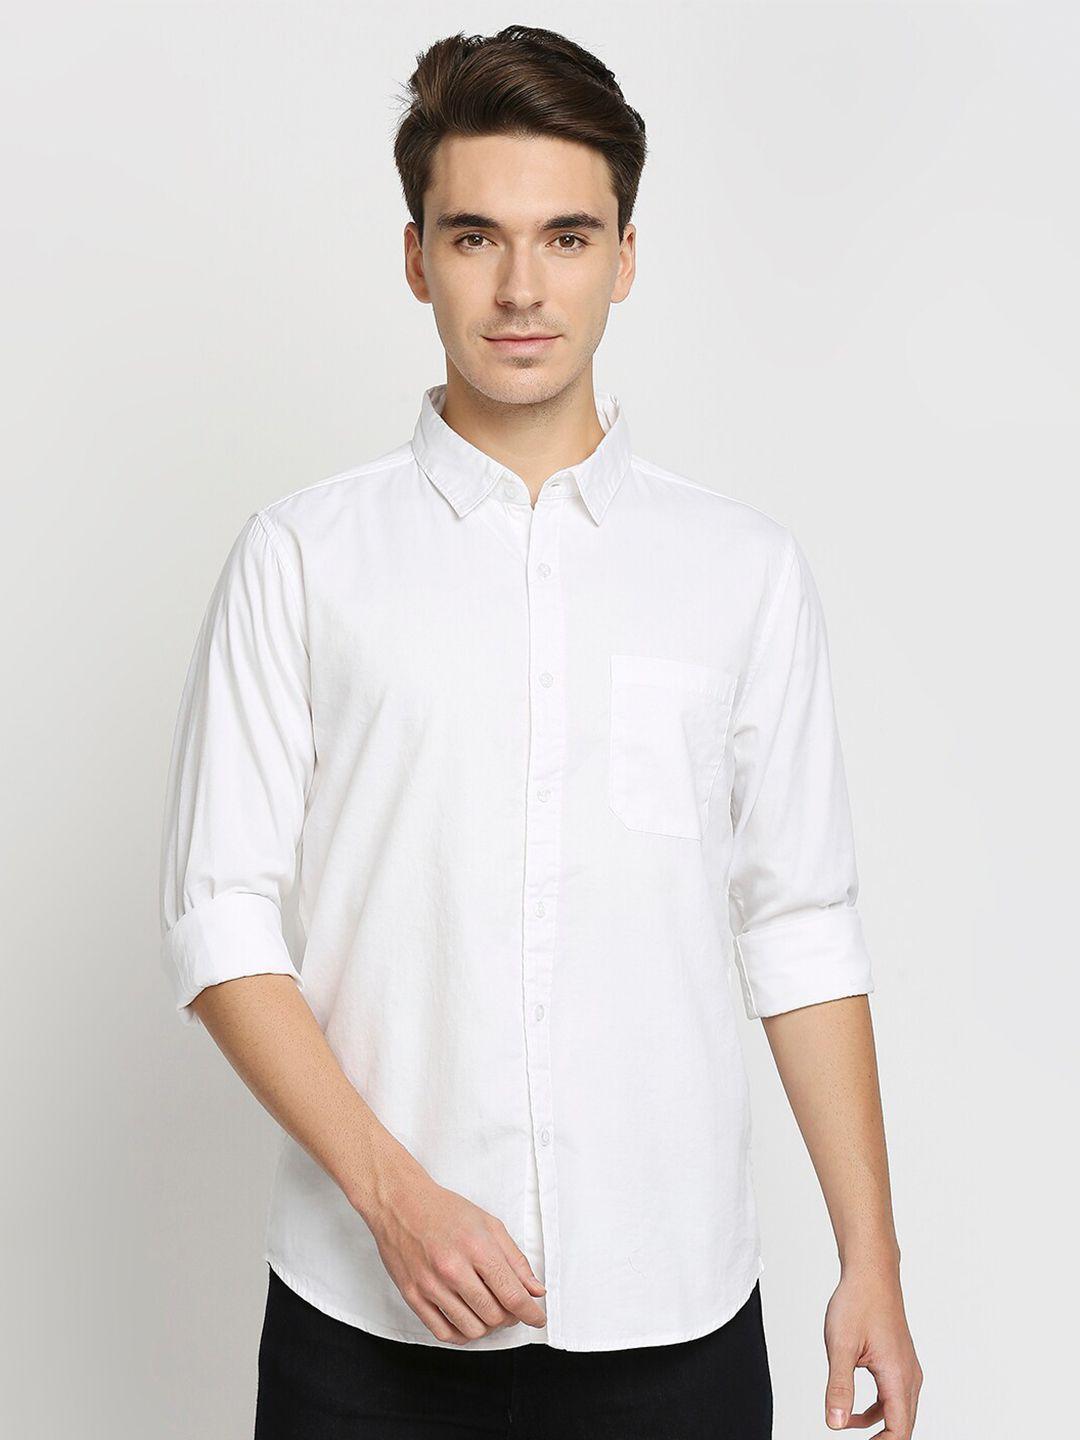 valen-club-men-slim-fit-casual-pure-cotton-shirt